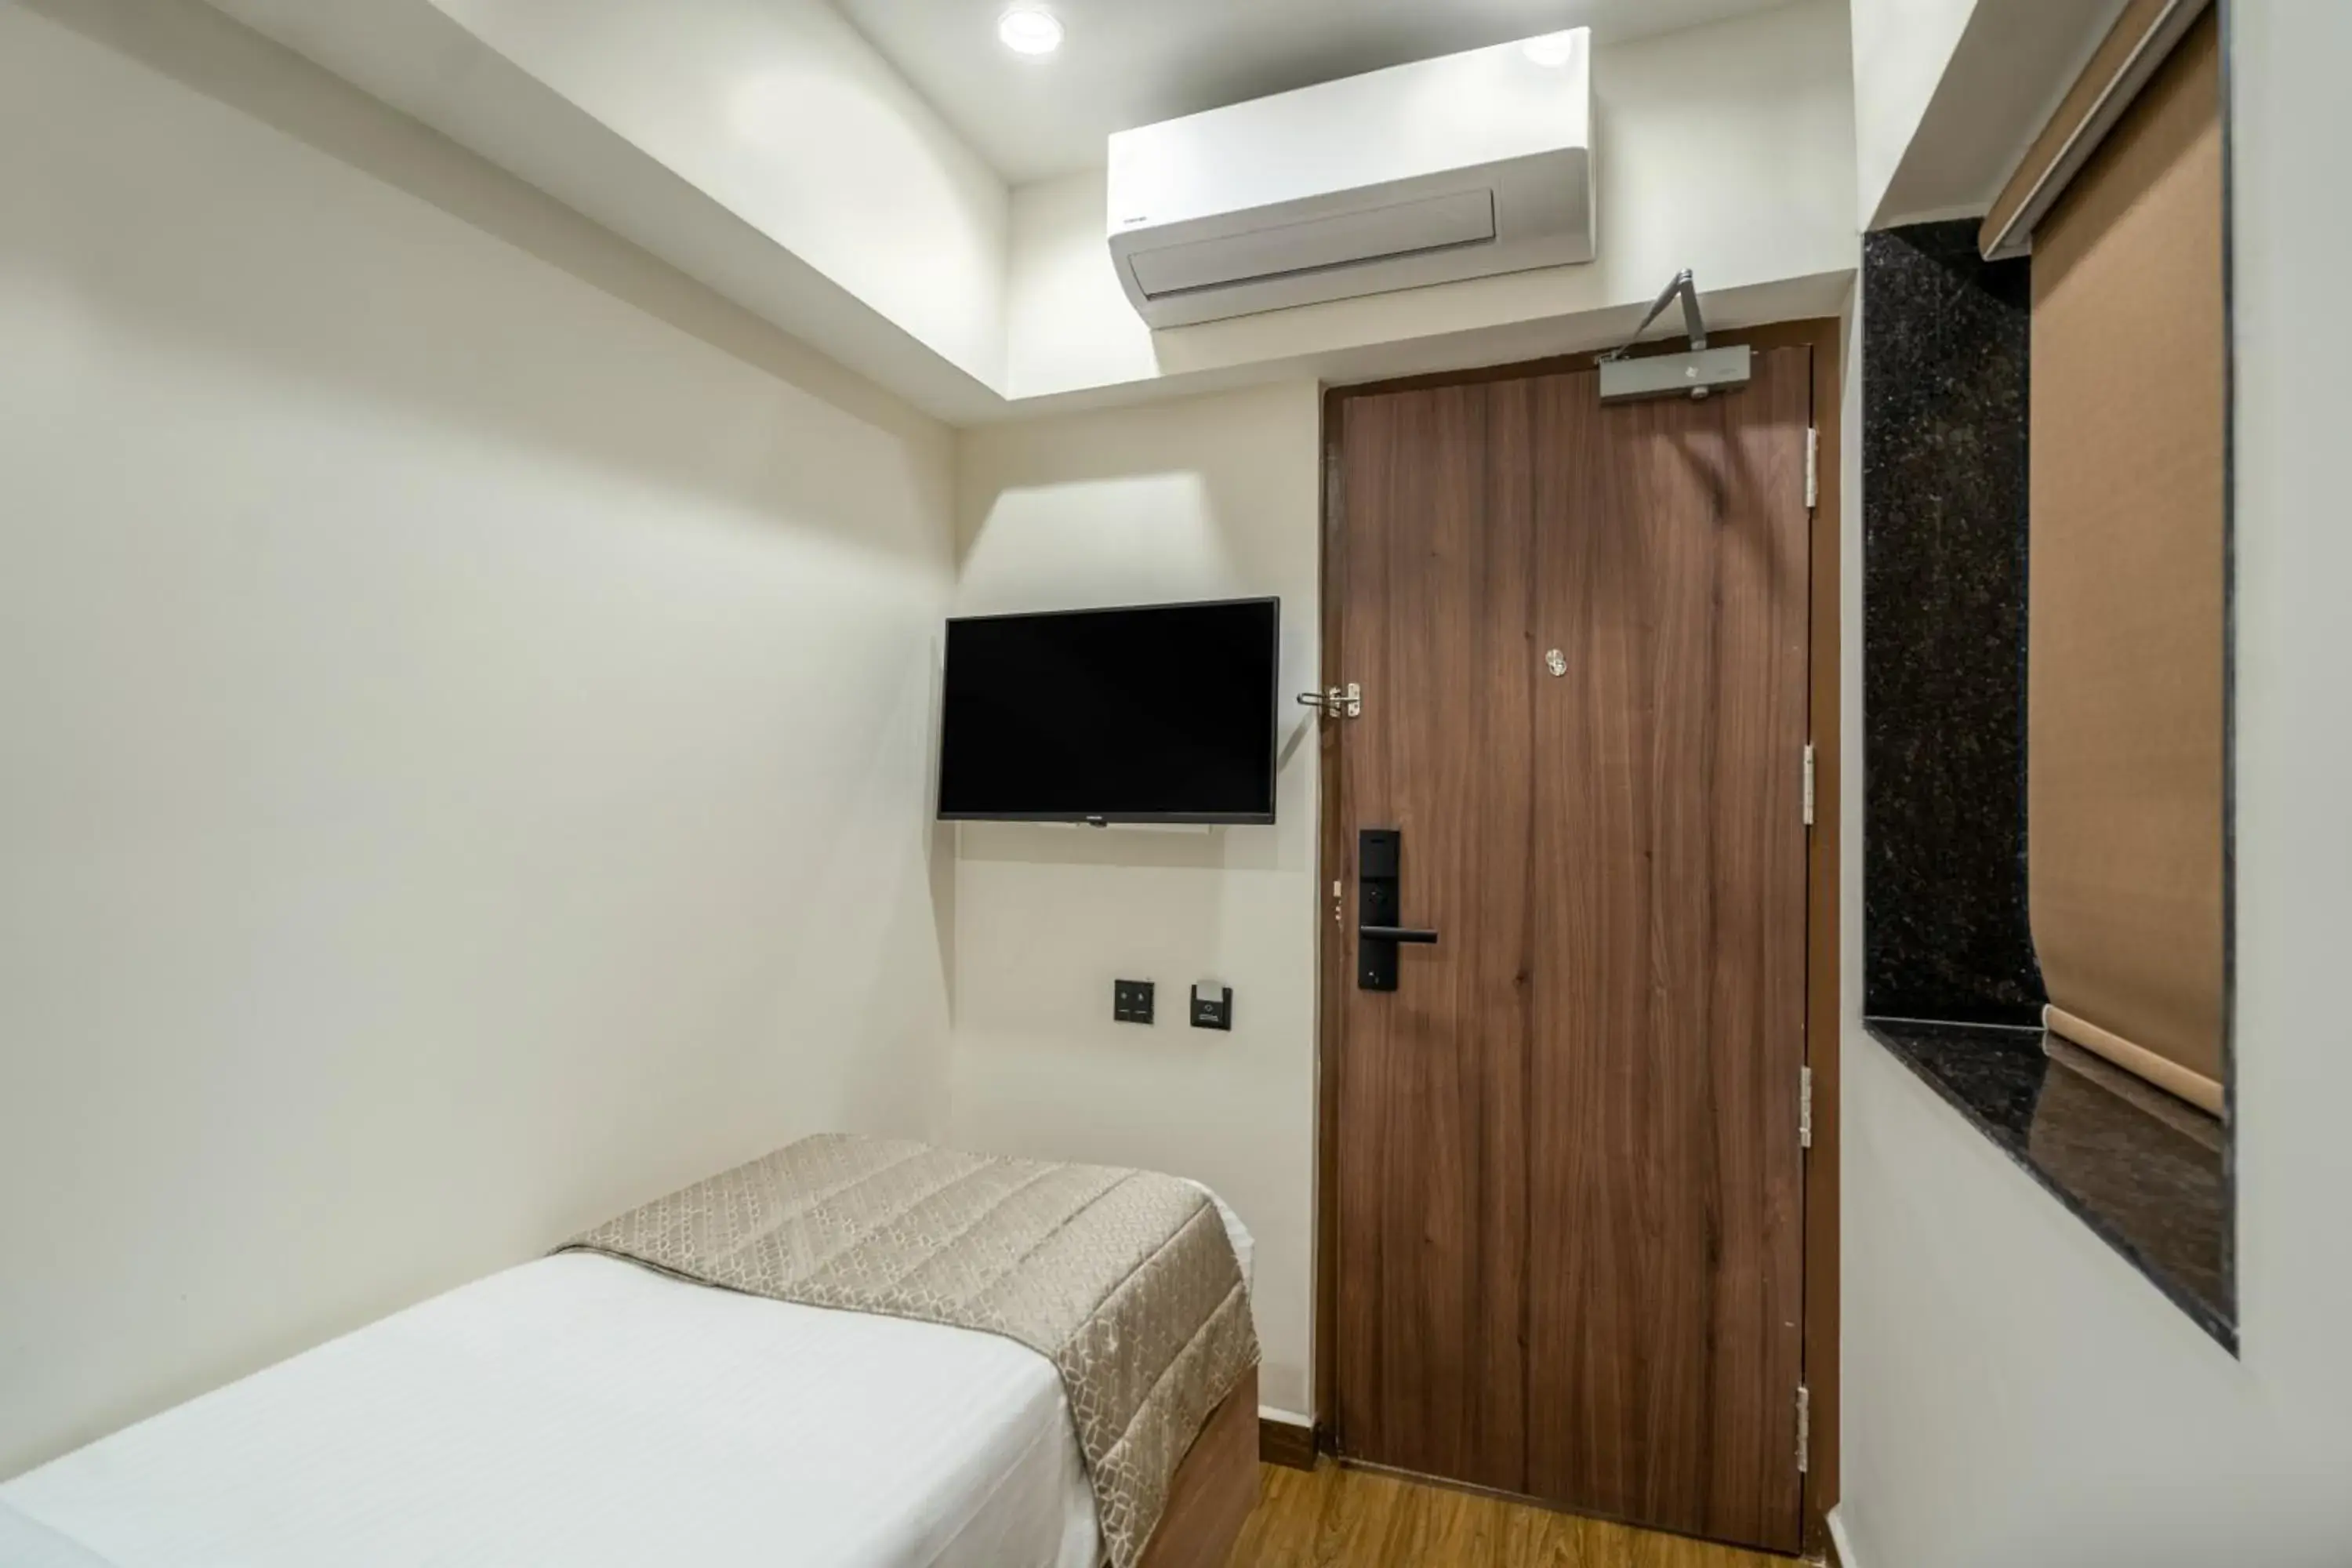 Bedroom, TV/Entertainment Center in Viera Elite - Jubilee Hills